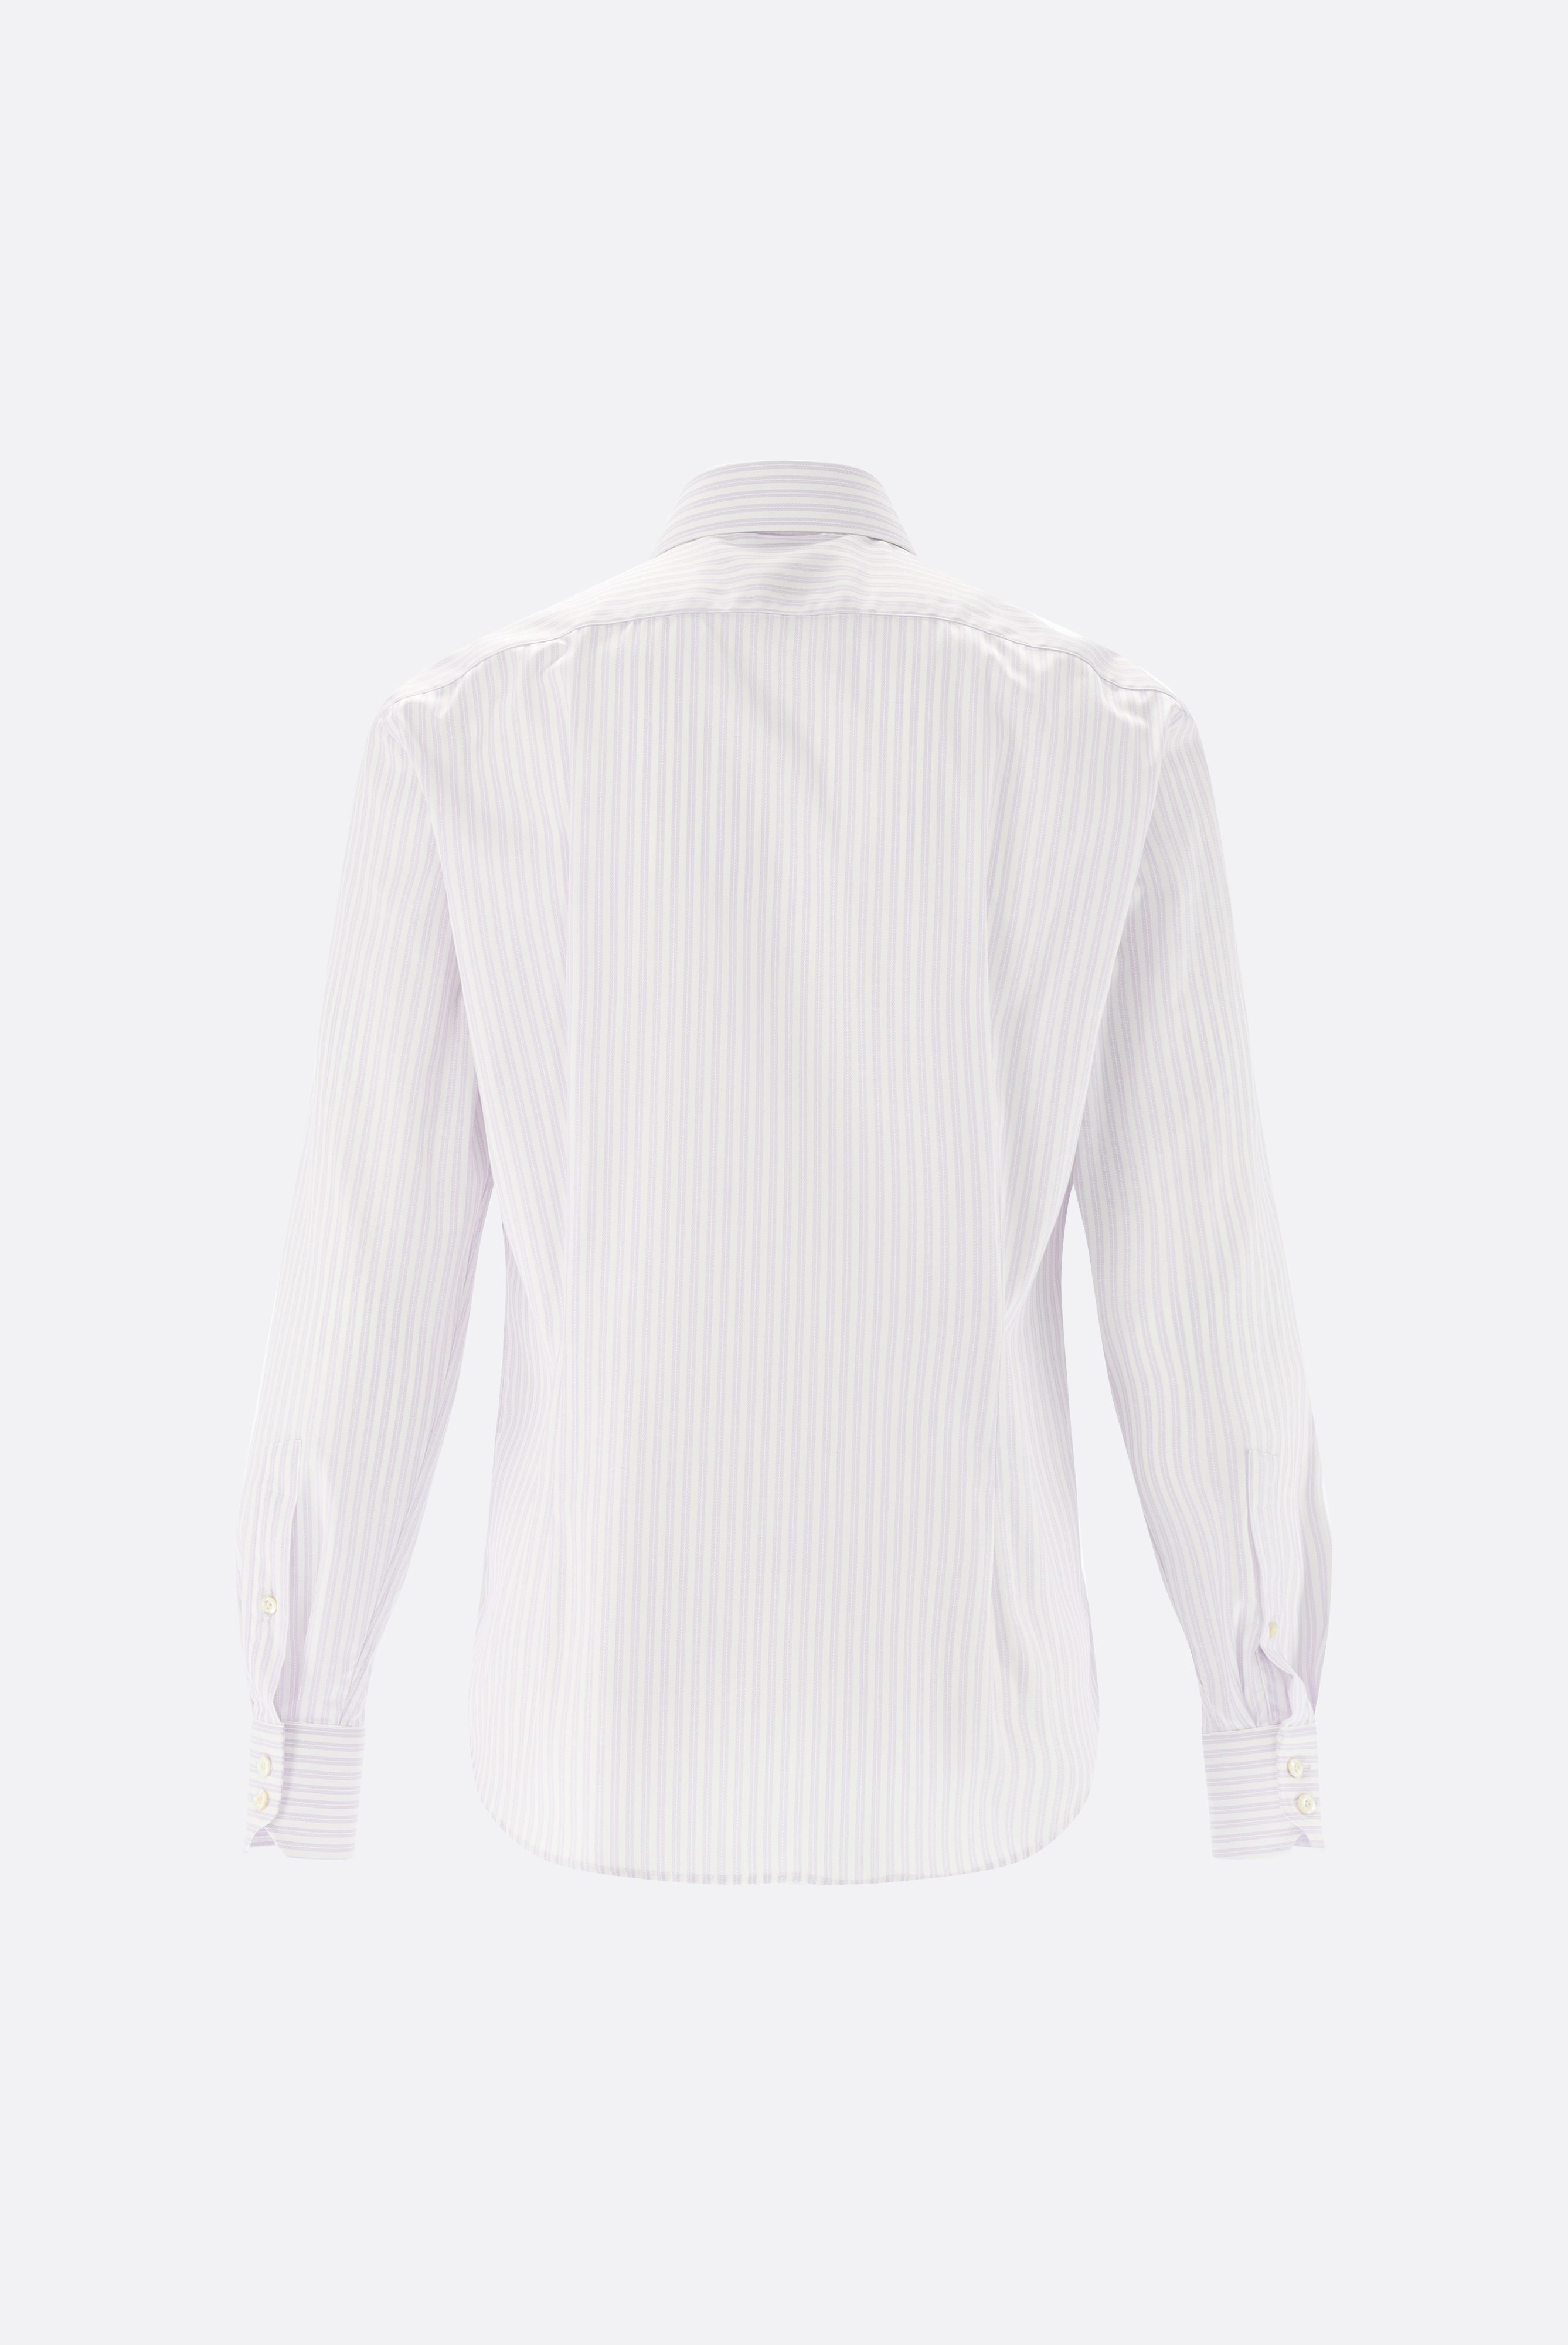 Easy Iron Shirts+Striped Wrinkle Free Shirt Slim Fit+20.2019.BQ.161106.006.38